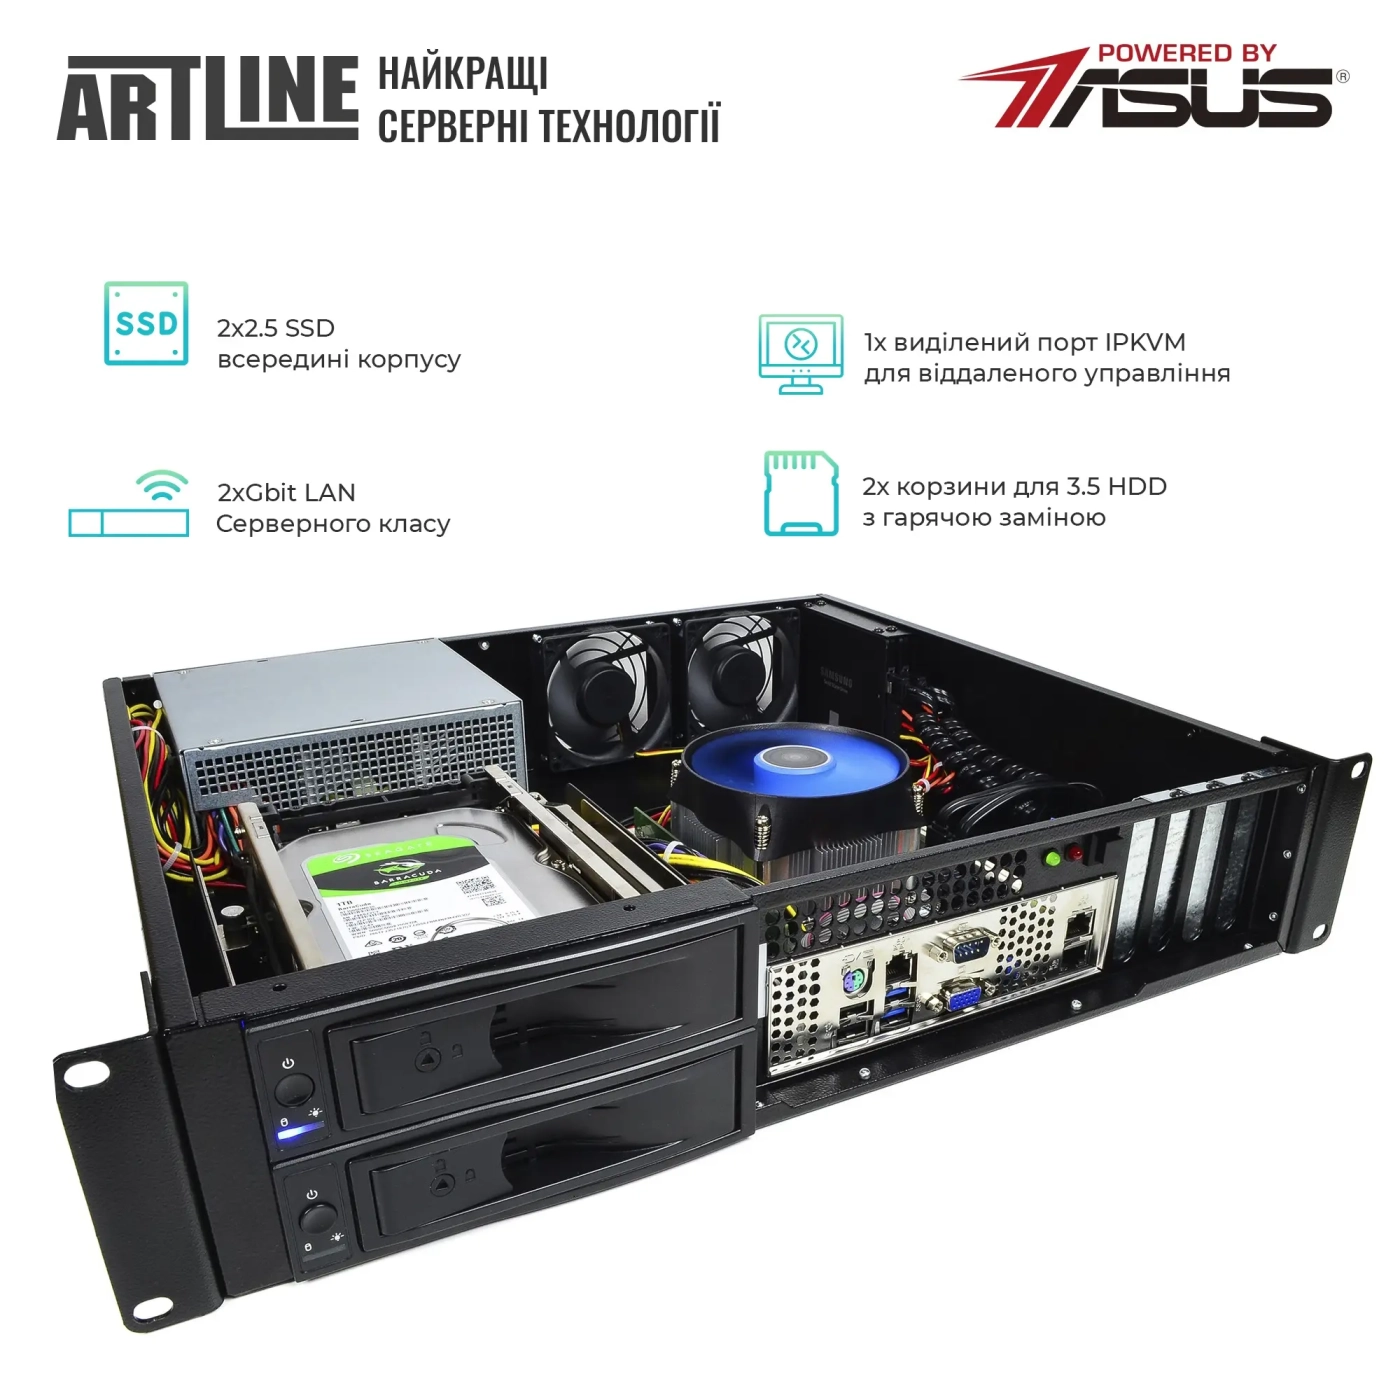 Купить Сервер ARTLINE Business R35 (R35v55) - фото 2